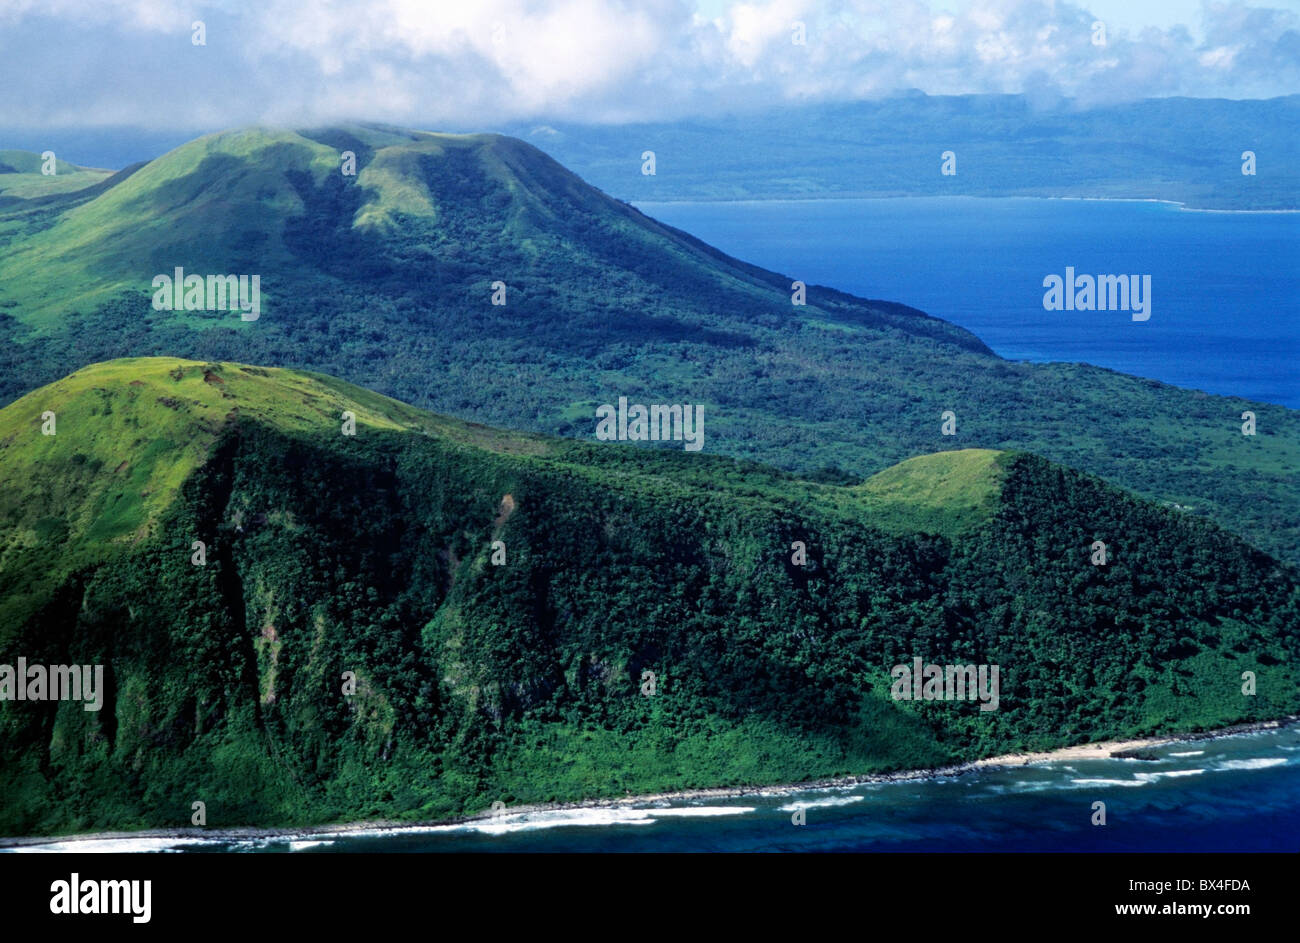 Vanuatu Inseln Nguna Antenne - Vulkane auf Island, in der Nähe der Insel Efate, Vanuatu im Südpazifik. Stockfoto